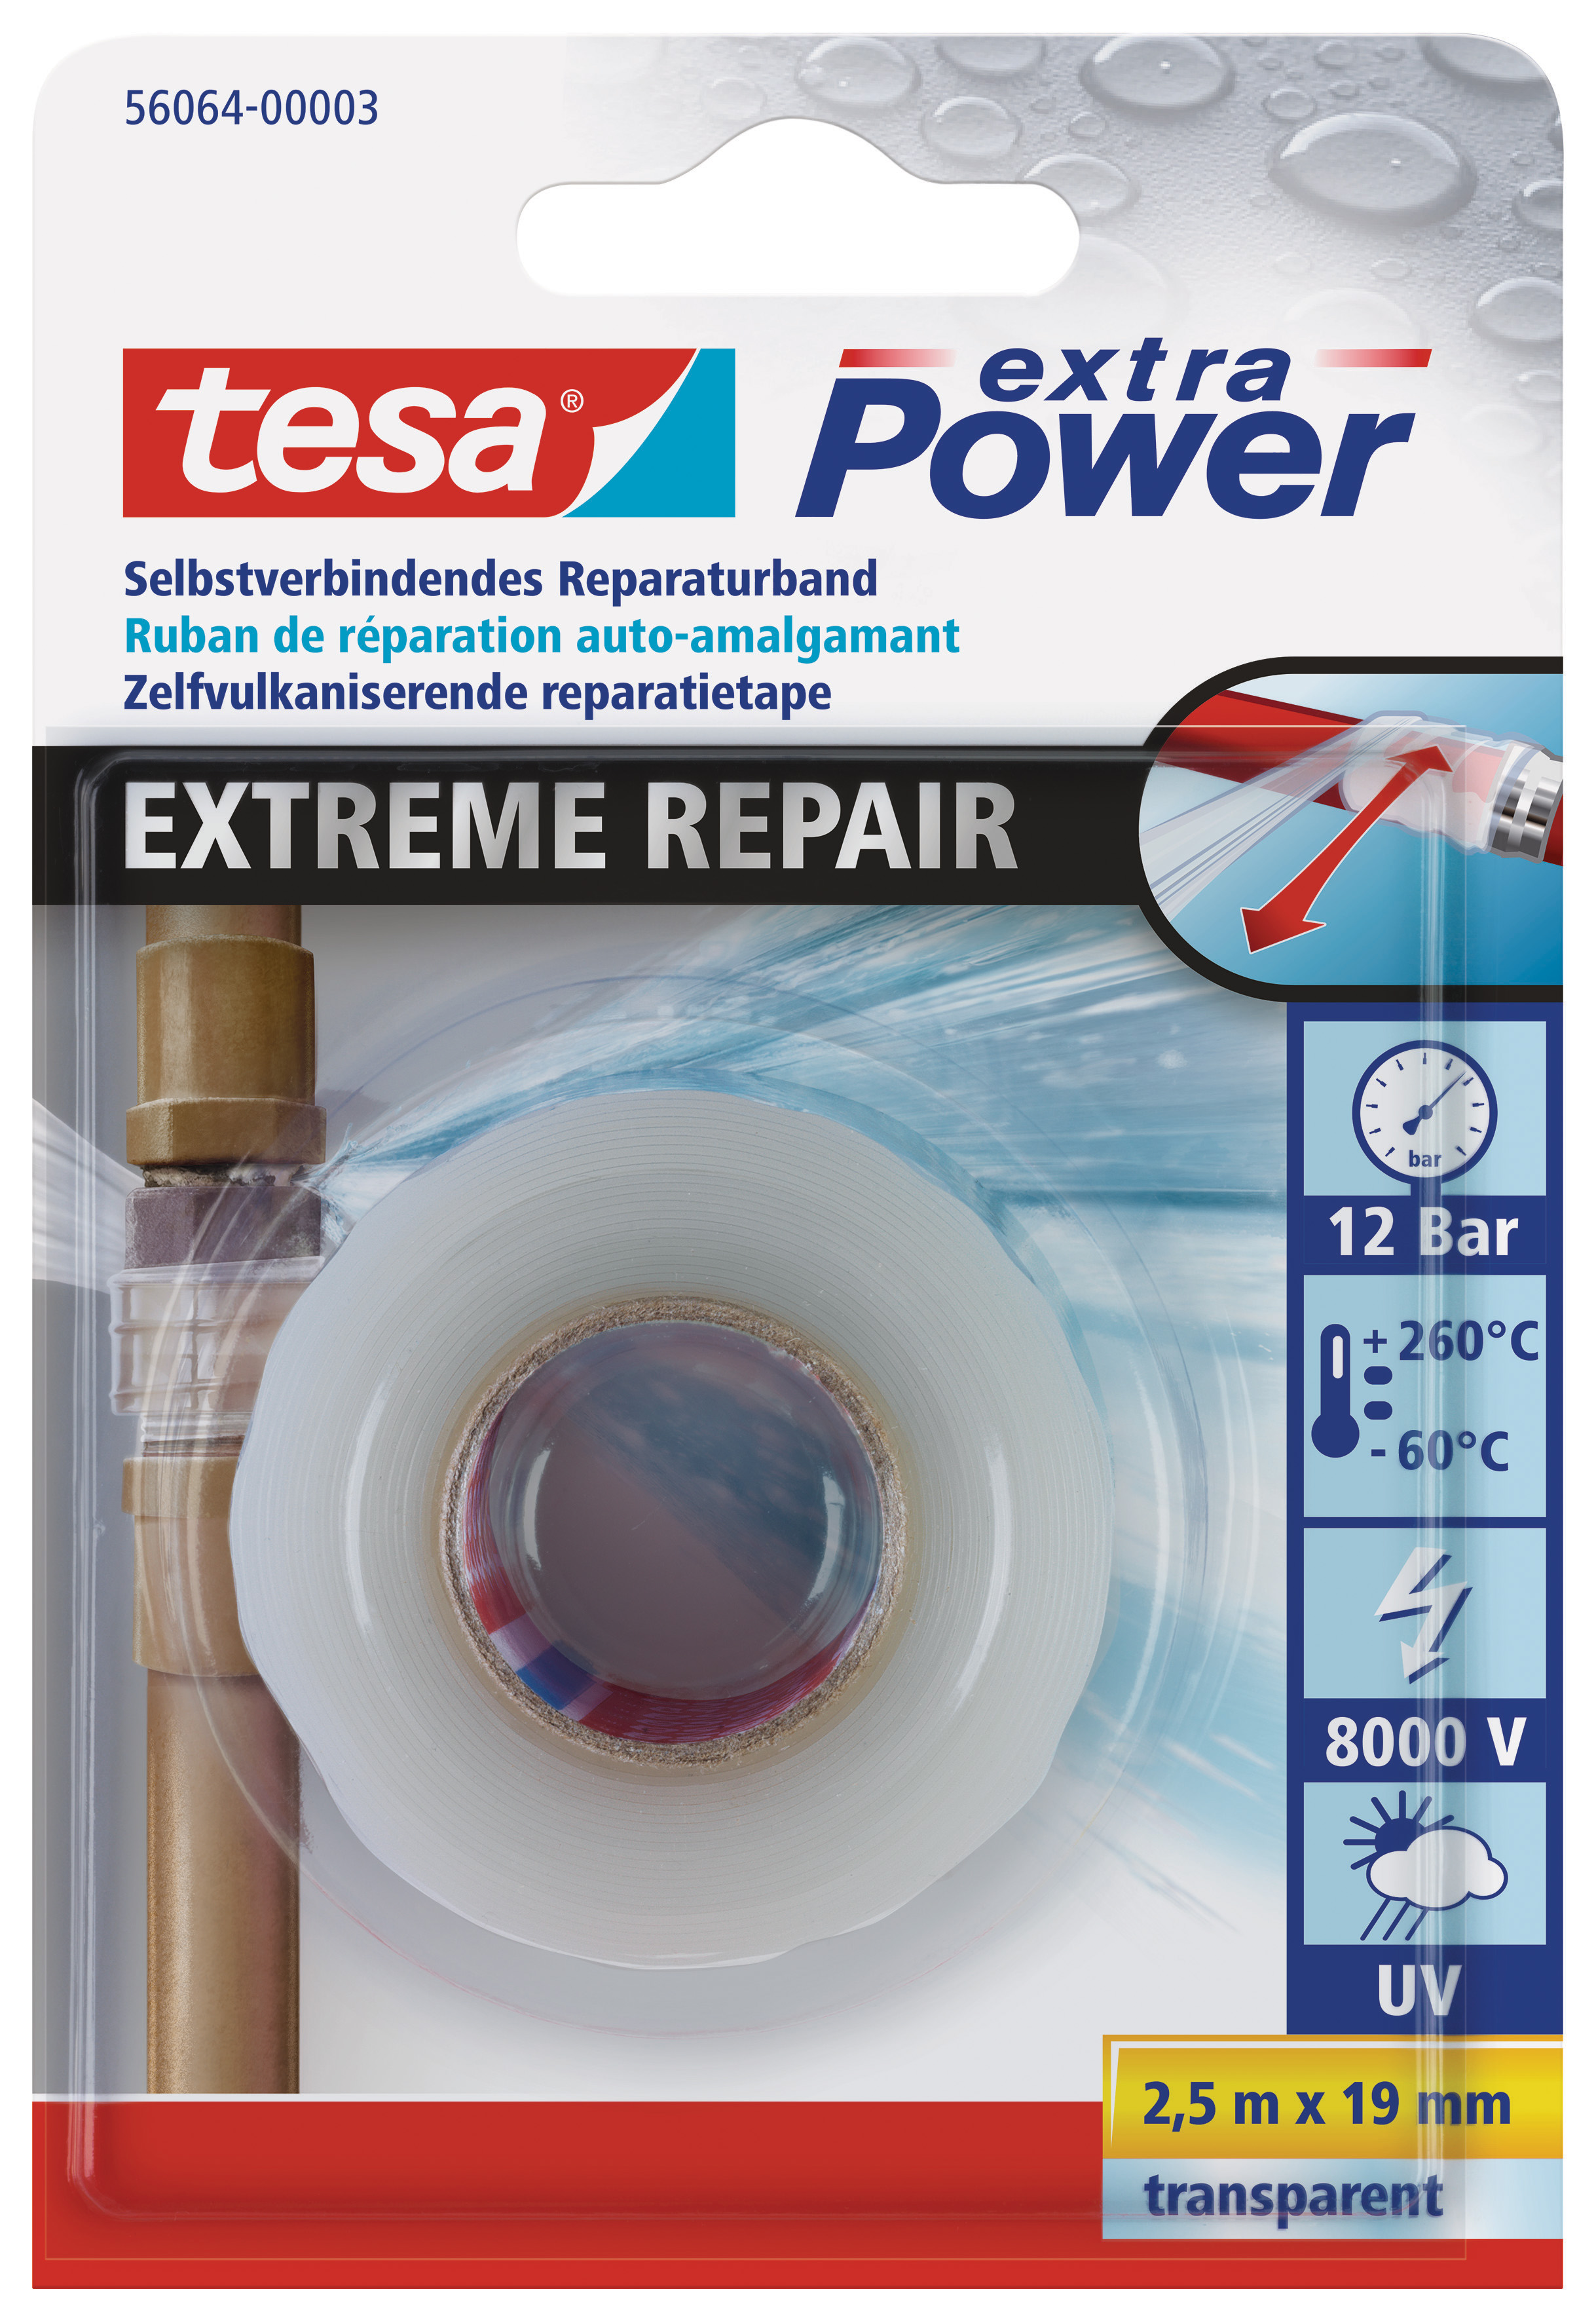 TESA extra Power Extreme Repair, Reparaturband, 19 mm x 2,5 m, transparent